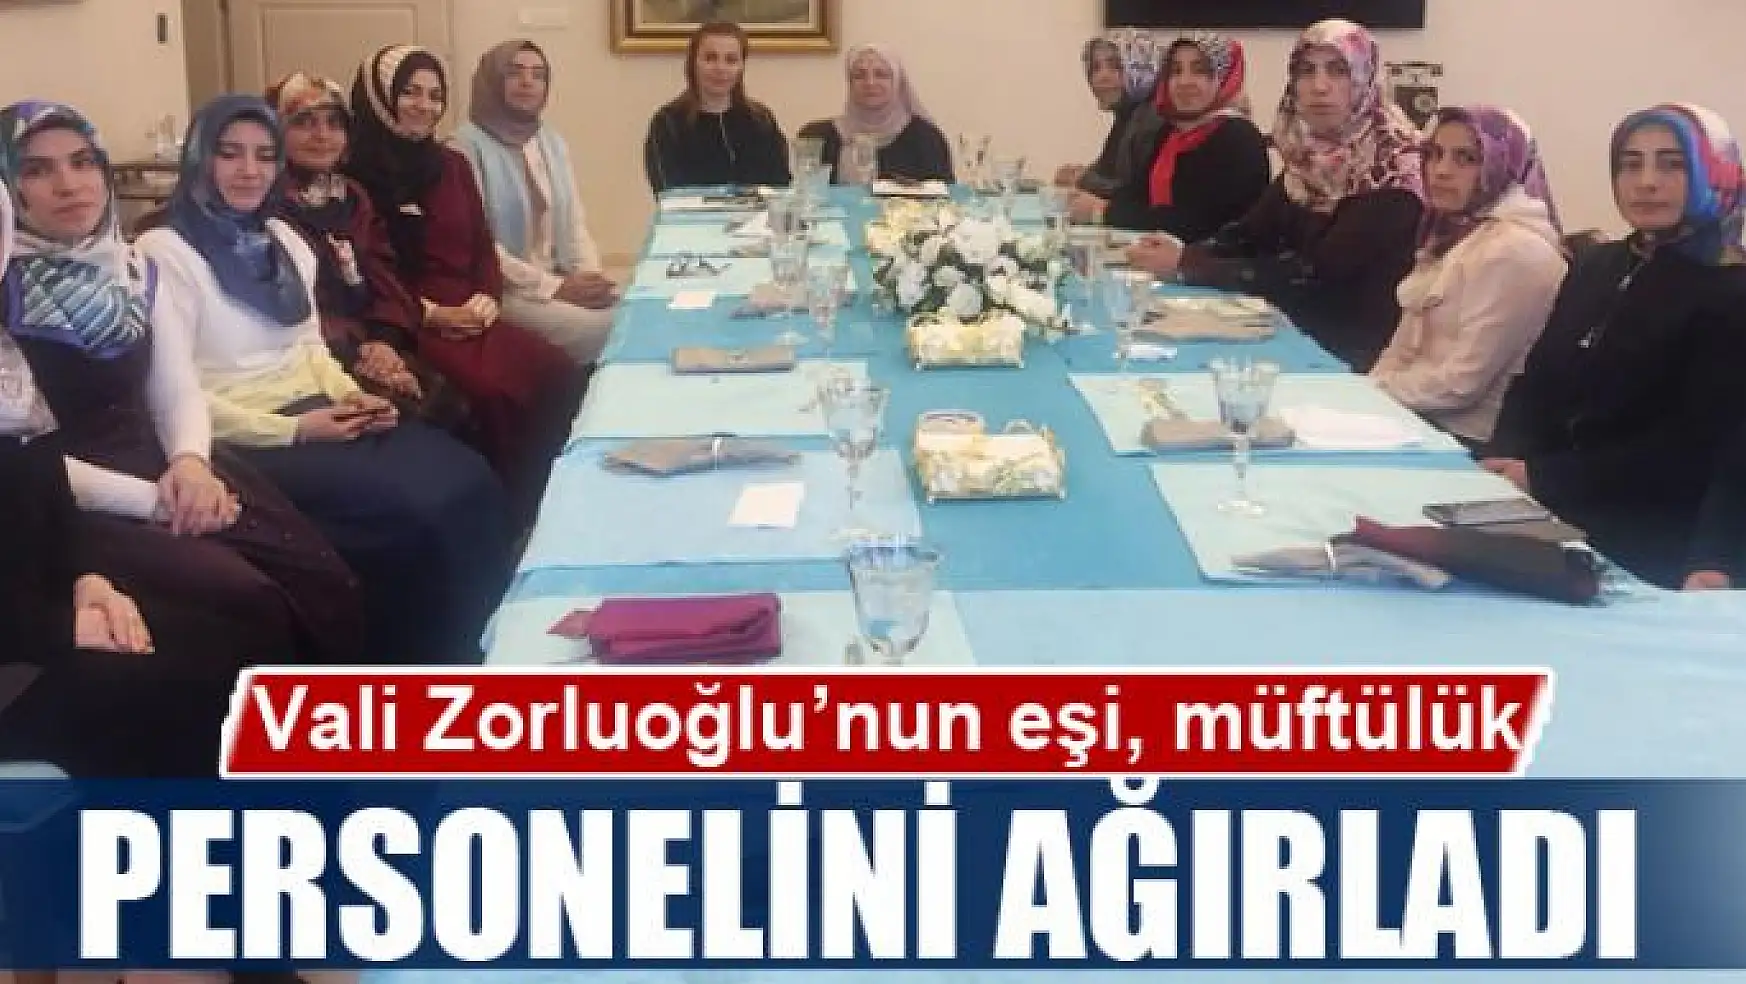 Vali Zorluoğlu'nun eşi, müftülük personelini ağırladı